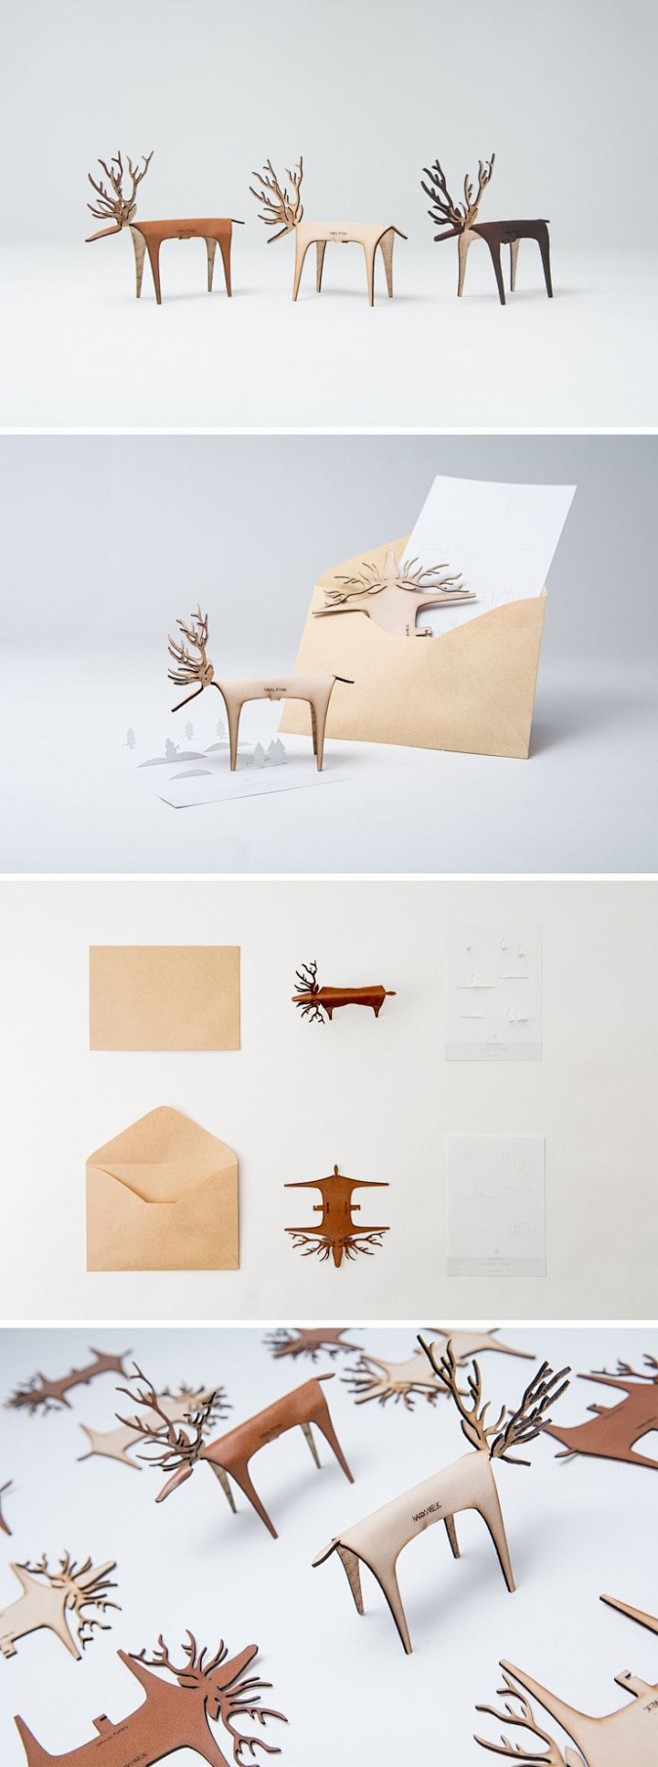 皮革的圣诞卡片 设计圈 展示 设计时代网...